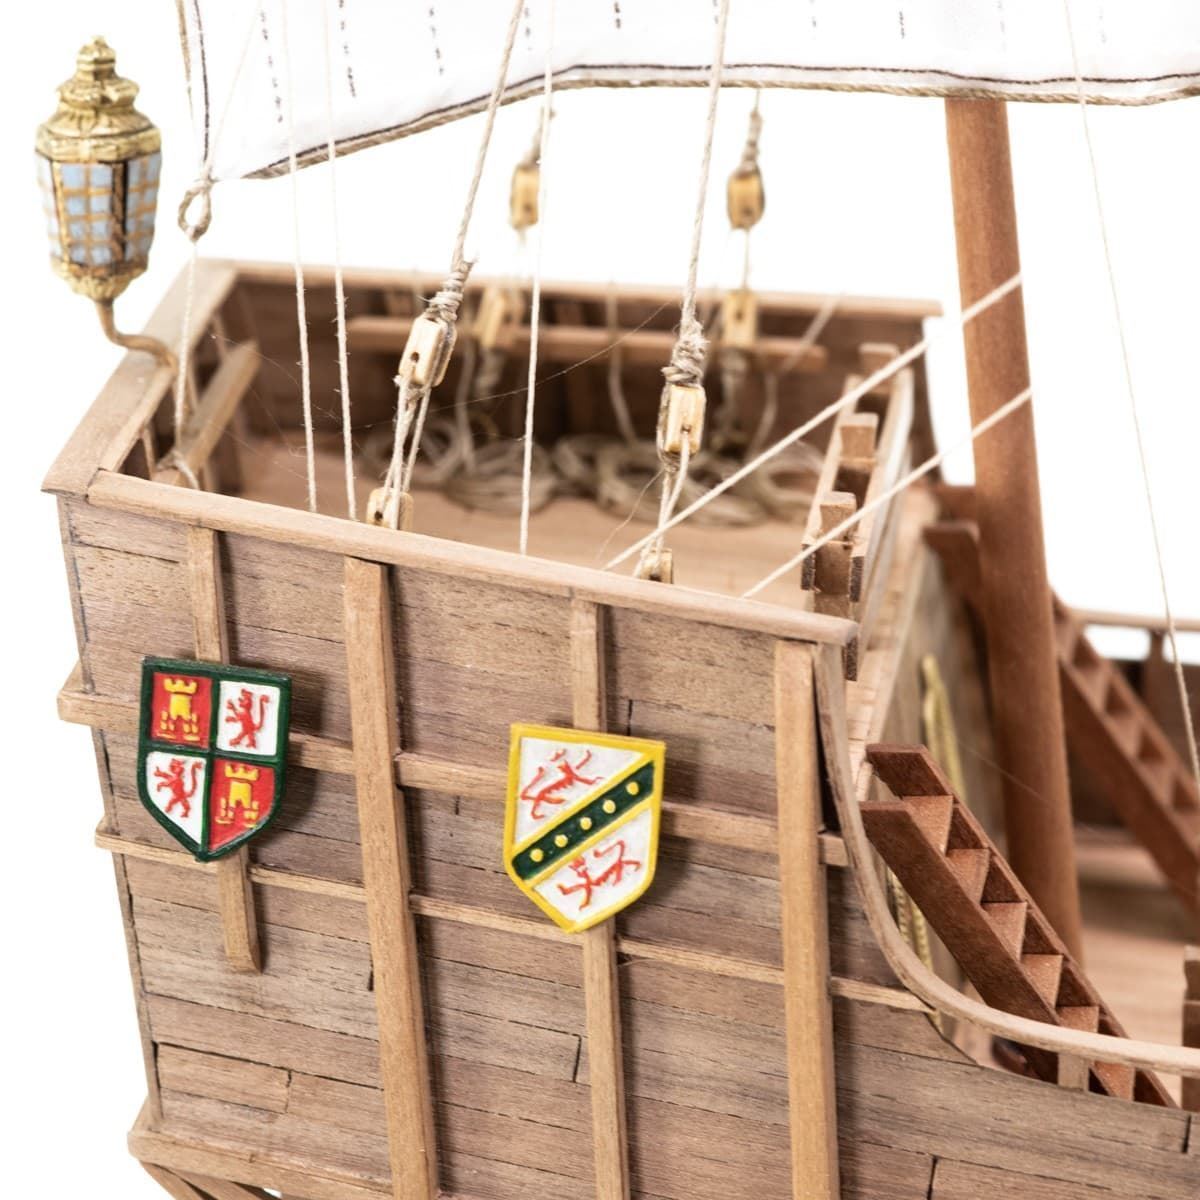 Maqueta barco madera: Carabela Santa María - Imagen 8